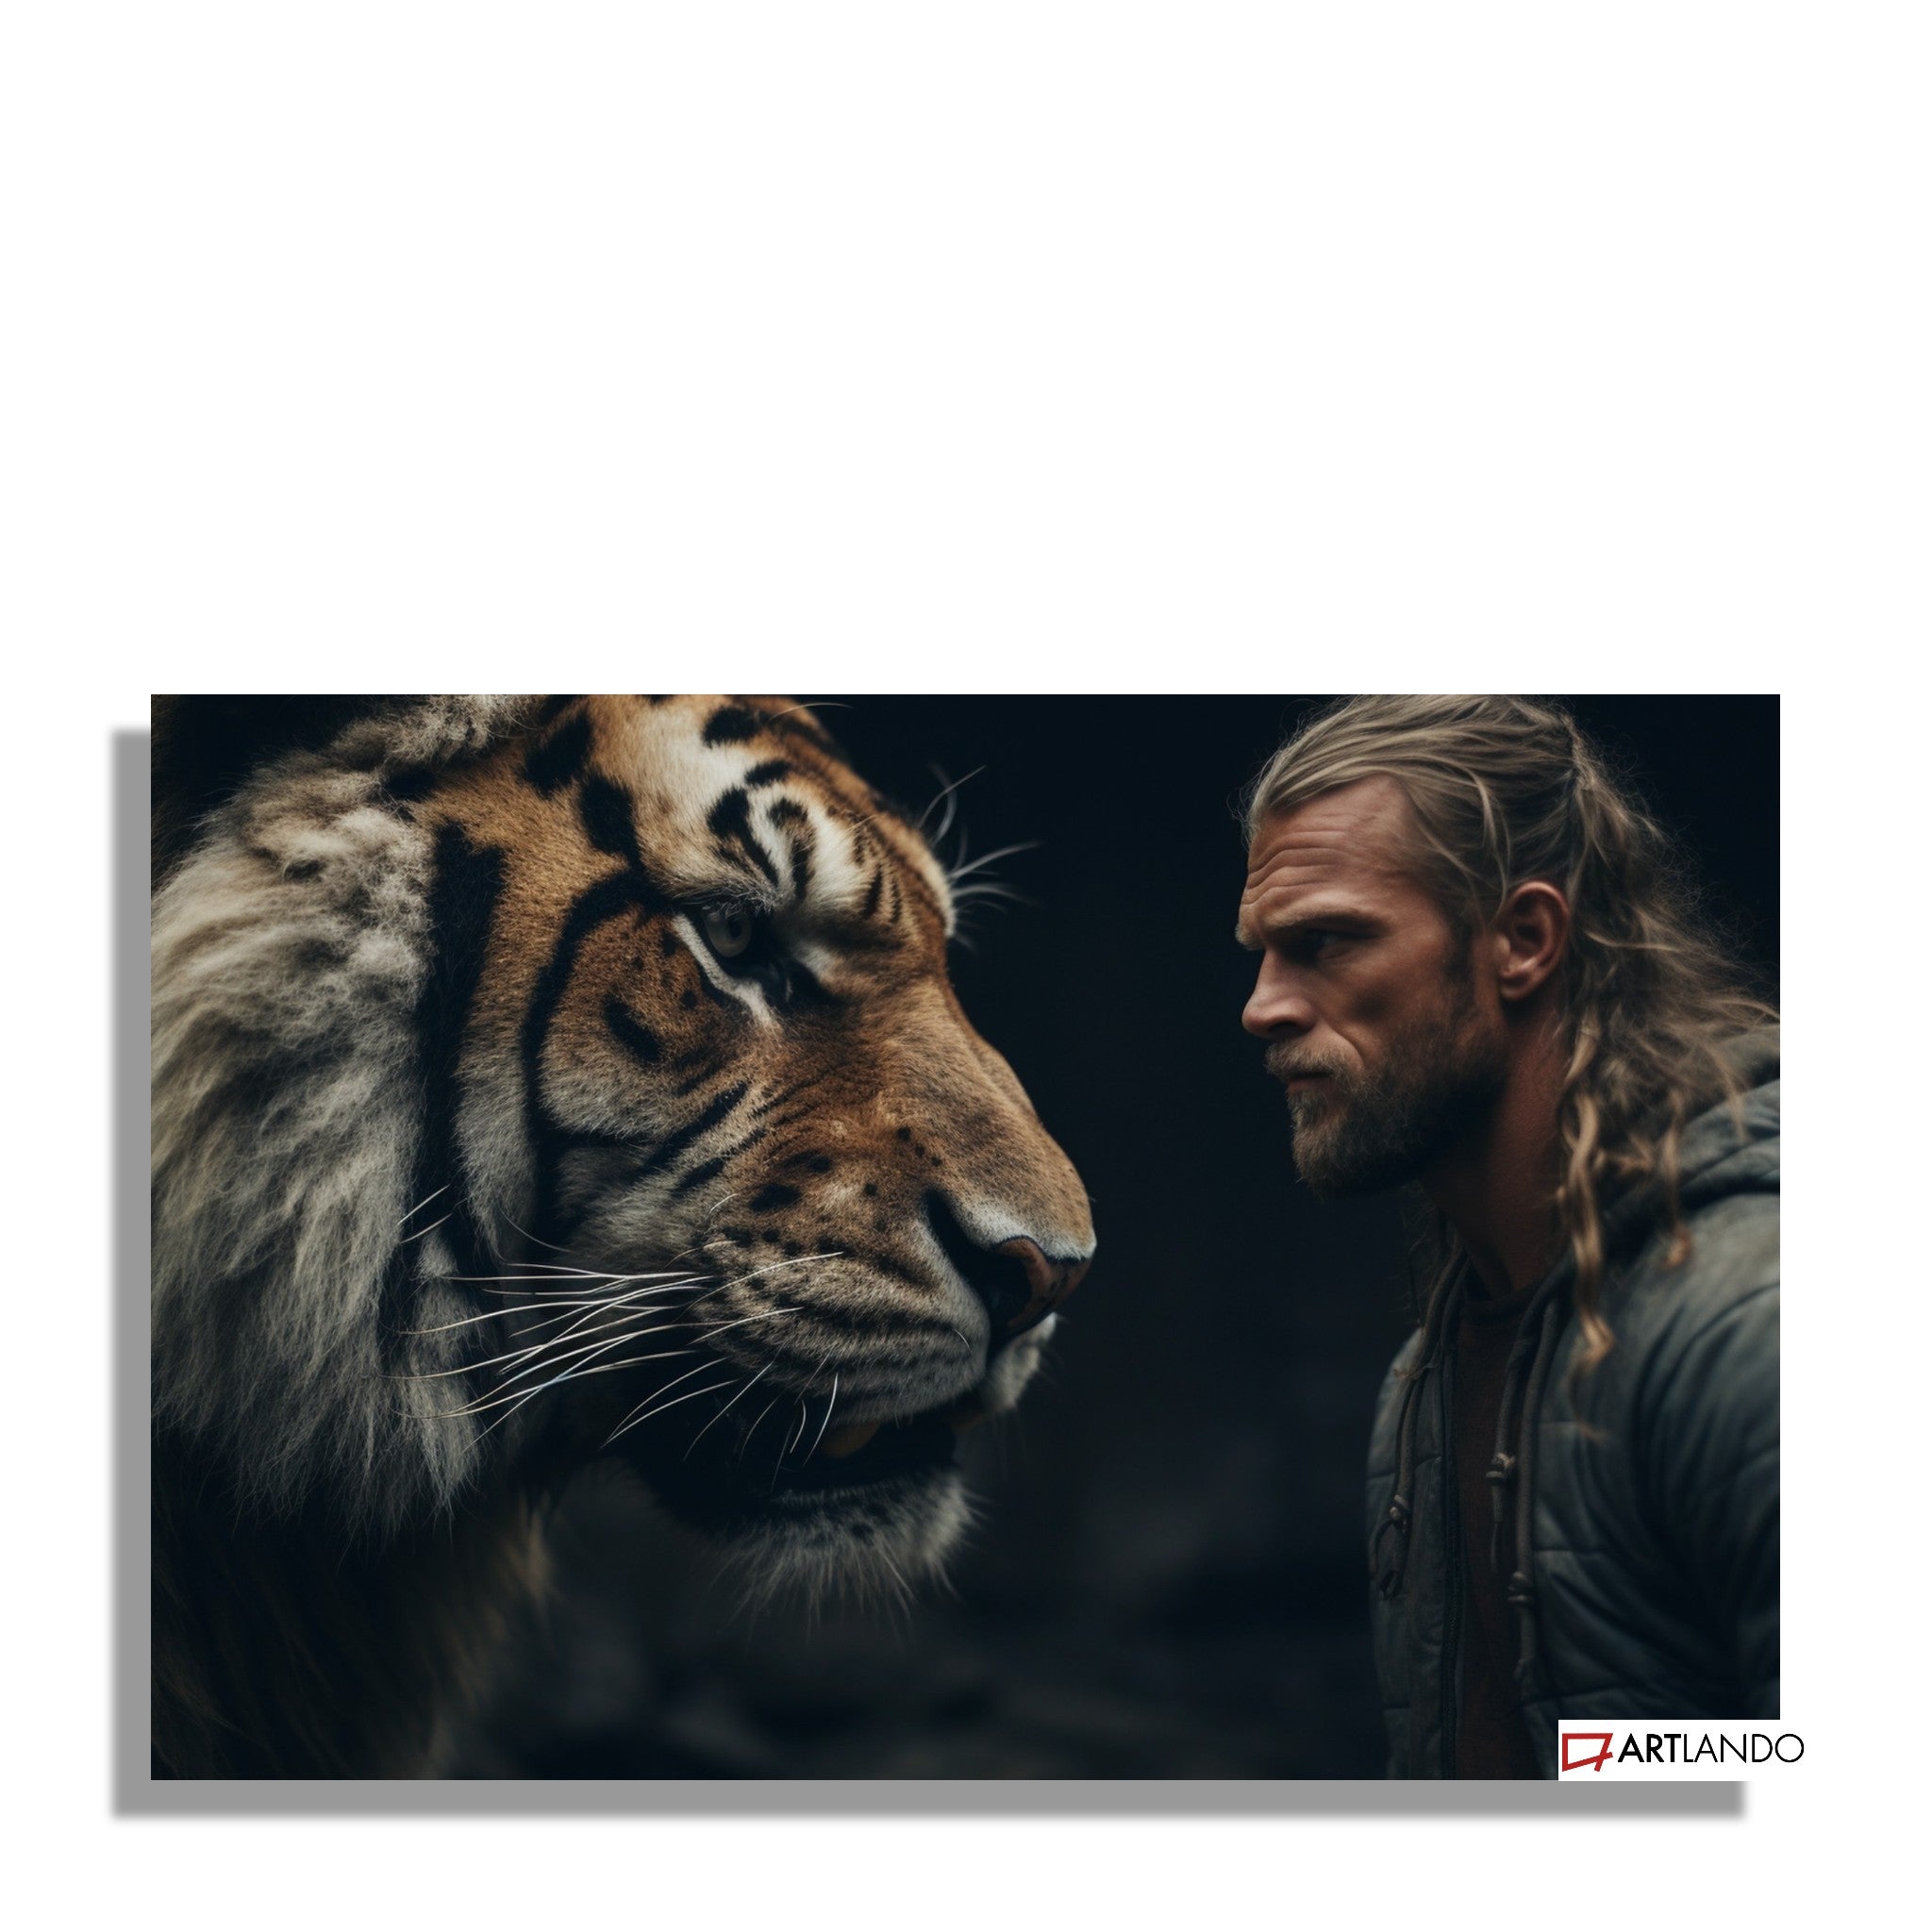 Mutiger Mann Auge in Auge mit Tiger